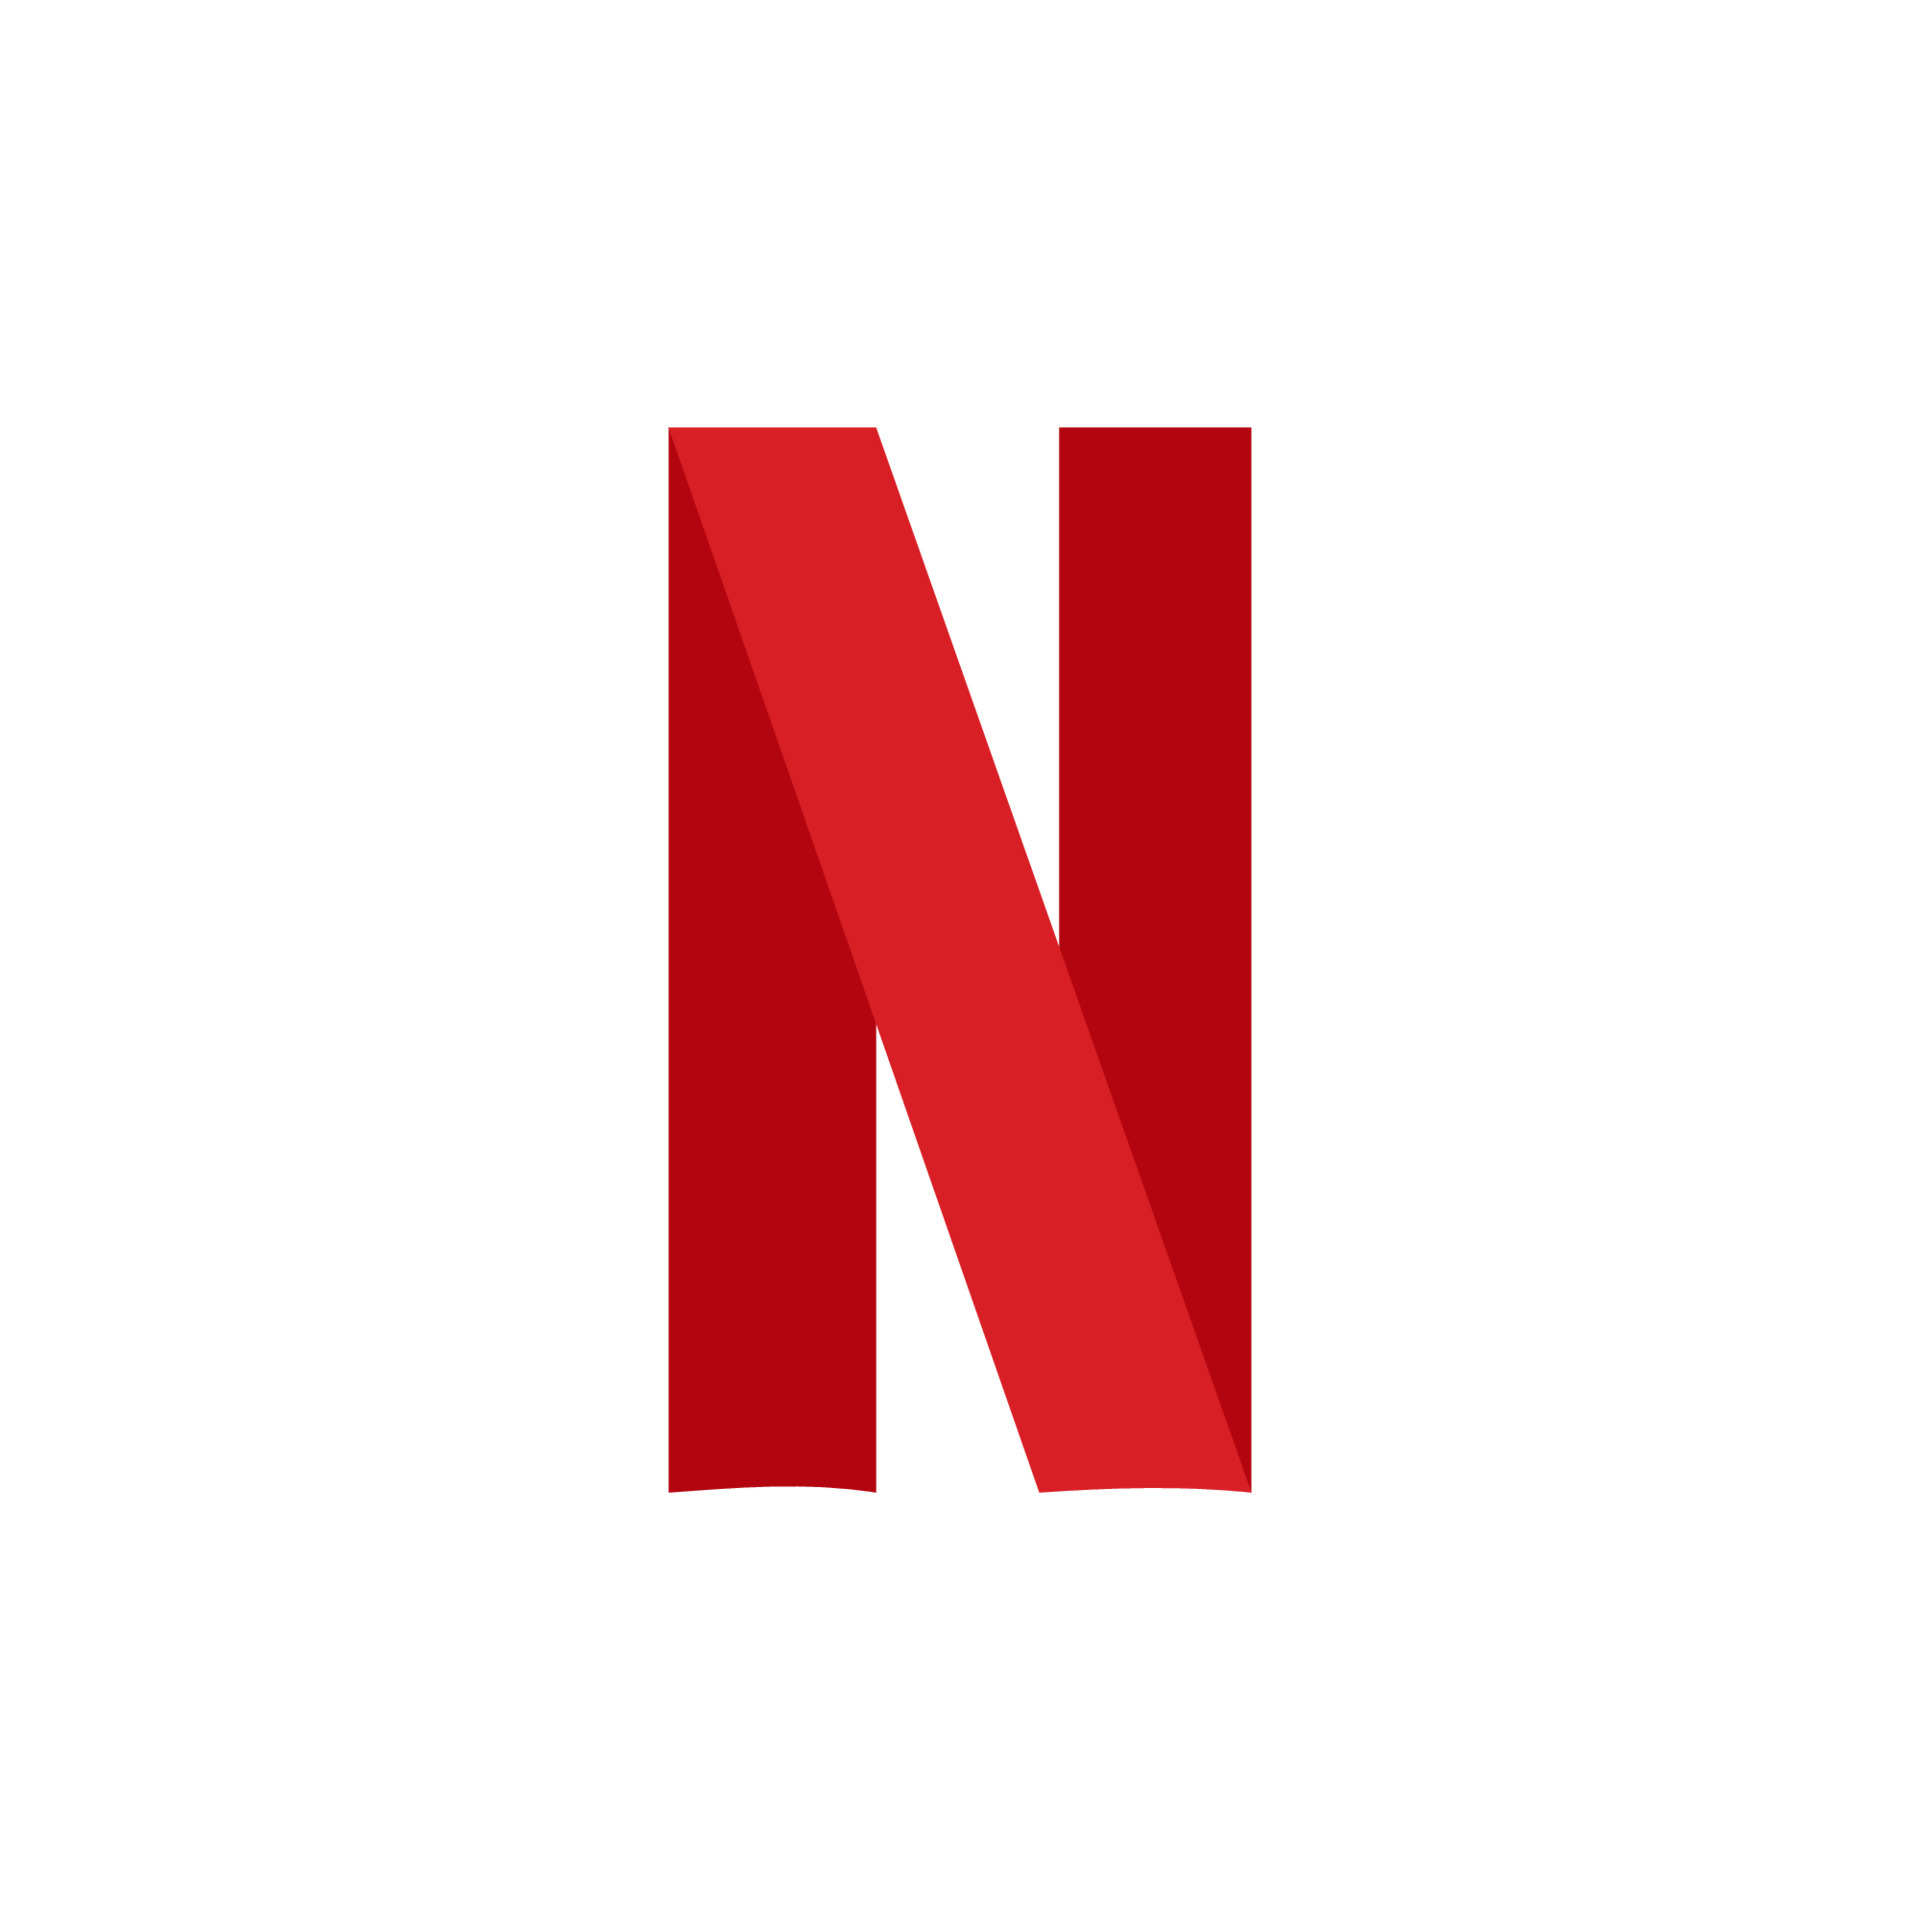 Hãy khám phá độc quyền của Netflix thông qua logo vector đầy mê hoặc này. Không chỉ đơn thuần là biểu tượng của một hãng phim nổi tiếng mà nó còn đầy tinh tế và sáng tạo. Hãy cùng khám phá và trải nghiệm nhé!